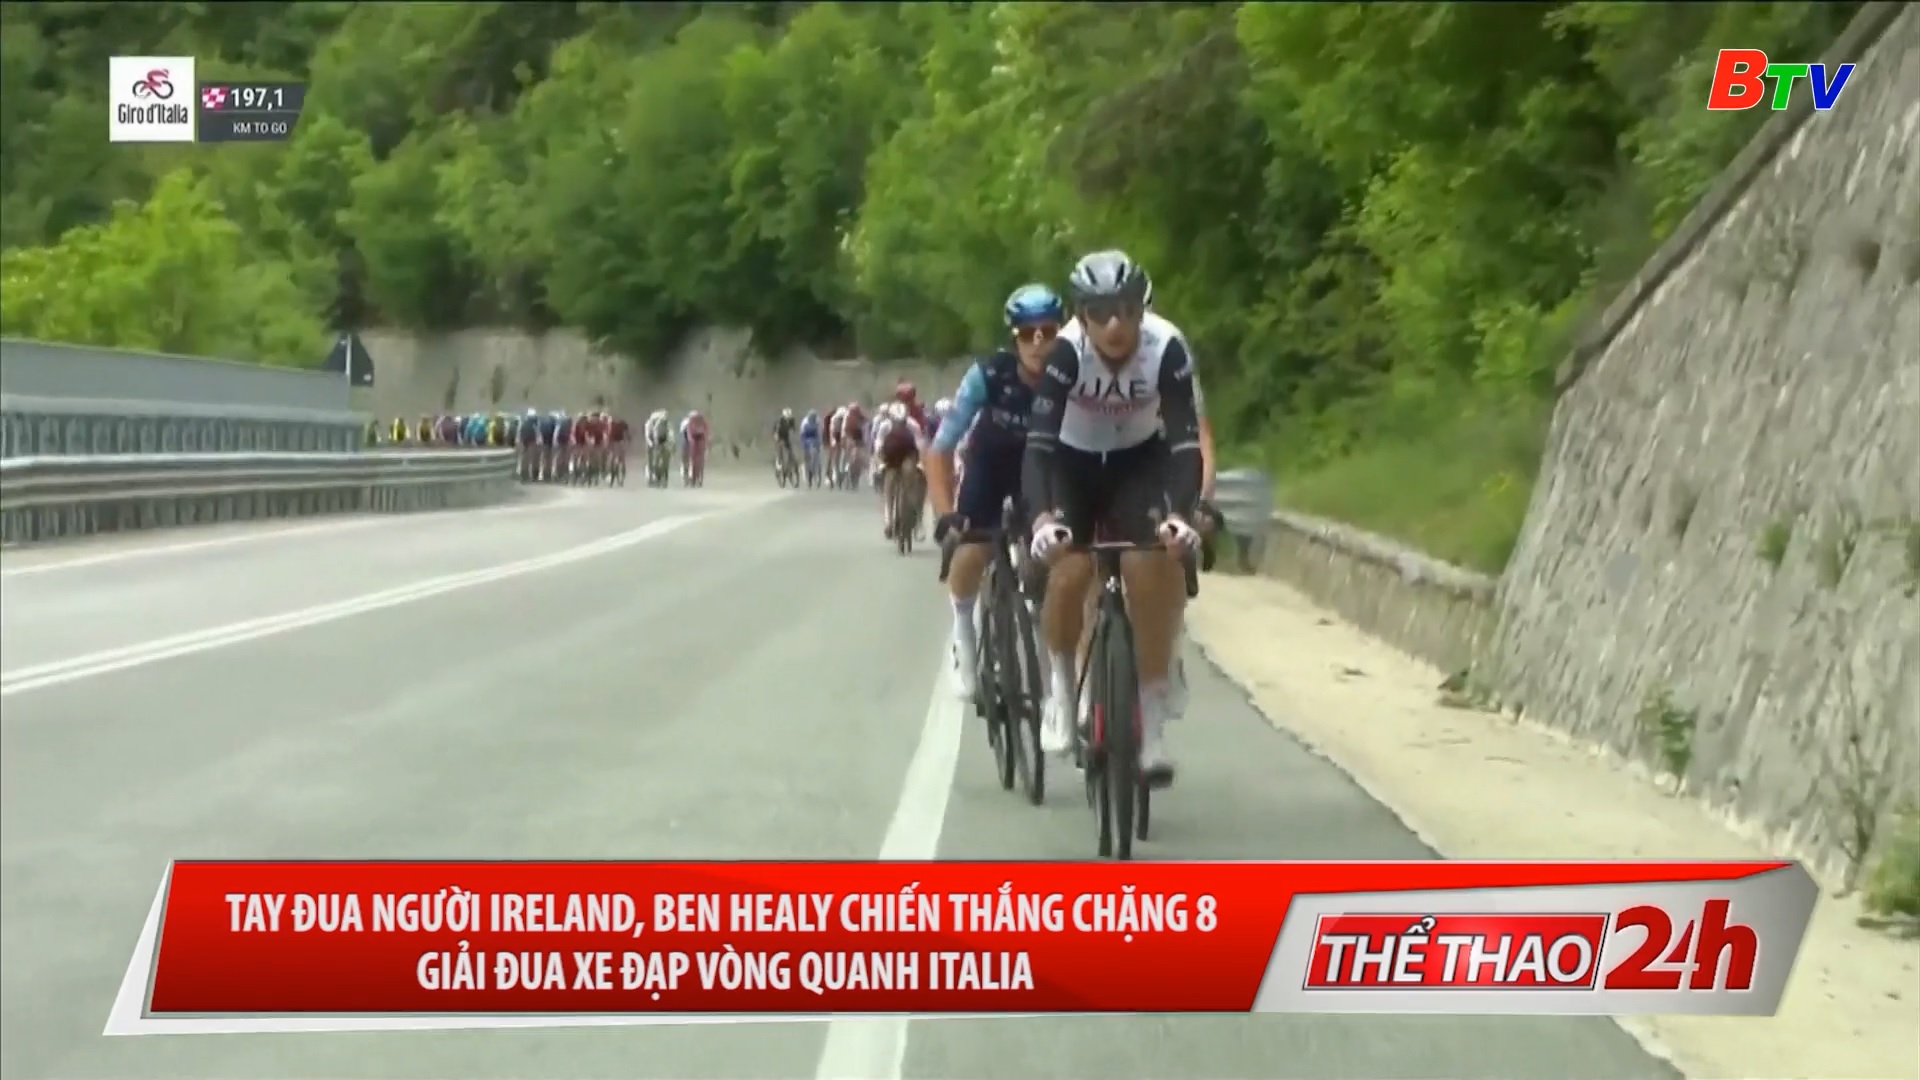 Tay đua người Ireland - Ben Healy chiến thắng chặng 8 Giải đua xe đạp vòng quanh Italia